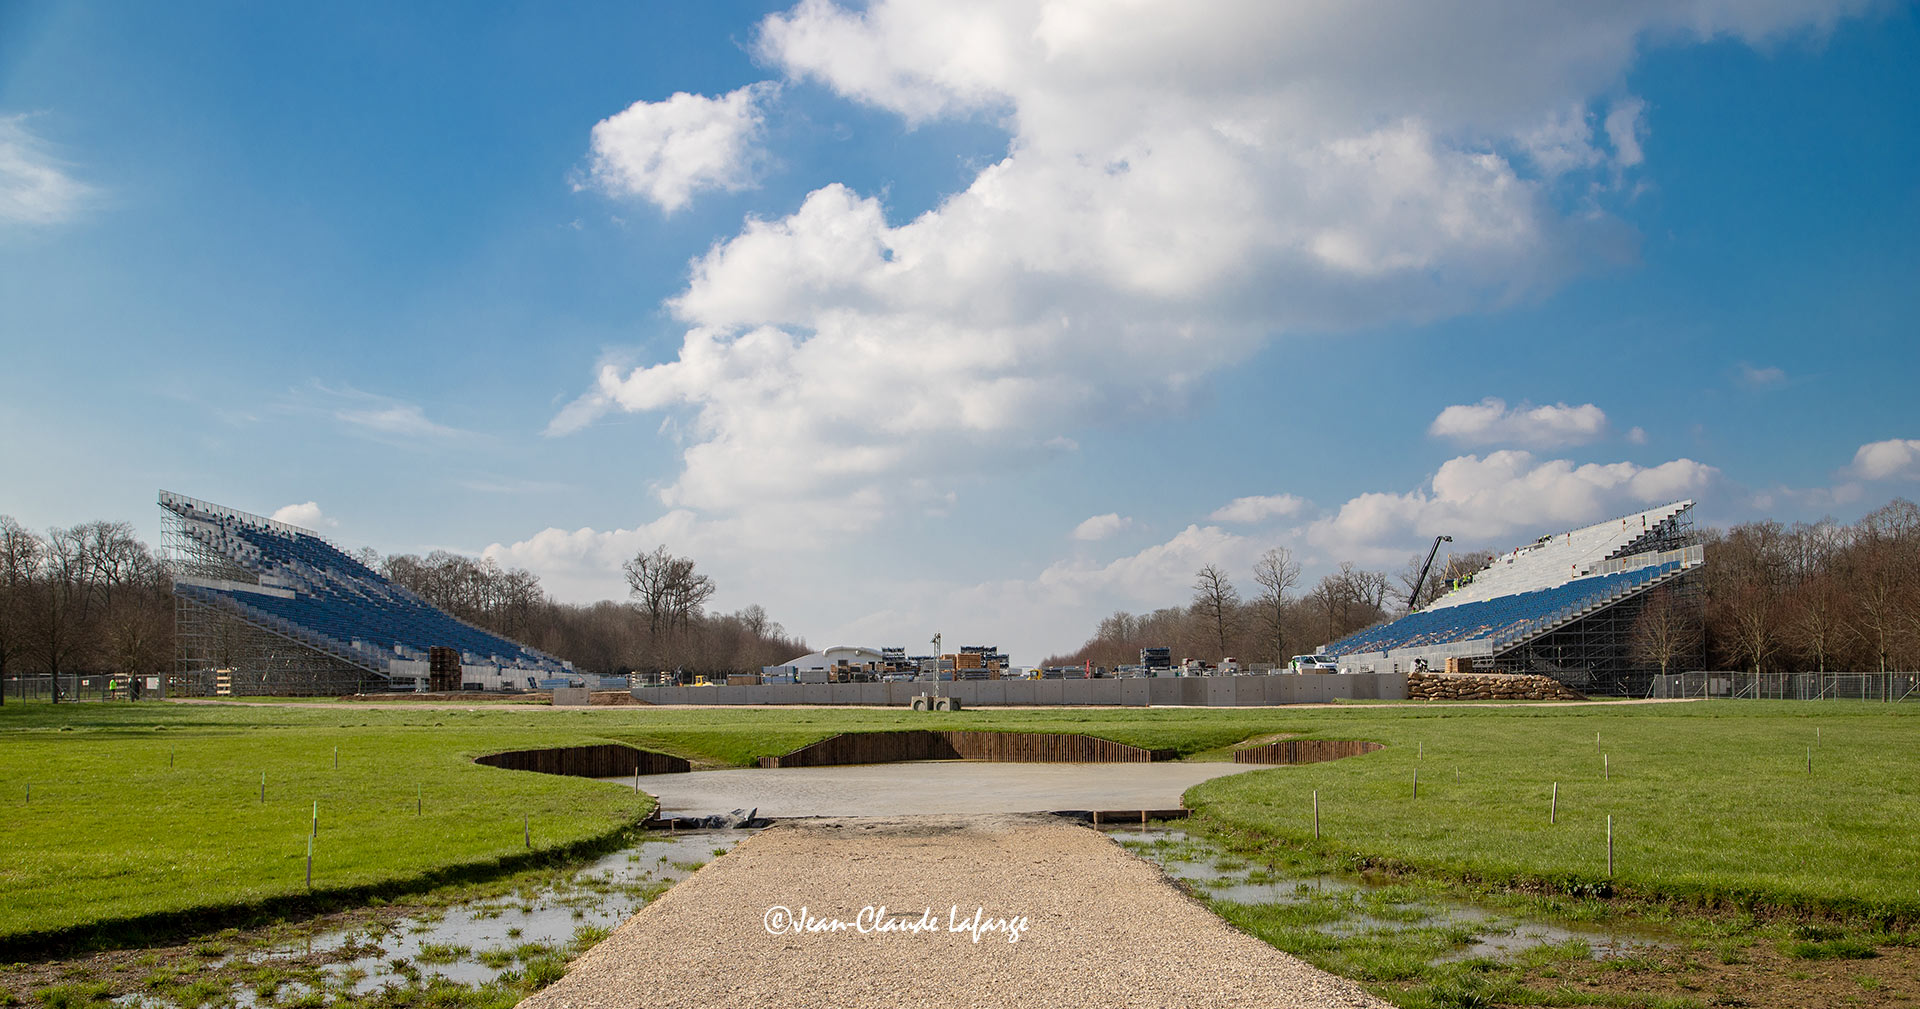 Installations pour les épreuves d'équitation des Jeux olympiques d'été de 2024 de Paris qui se dérouleront du 27 juillet au 6 août 2024 dans le parc du château de Versailles. 